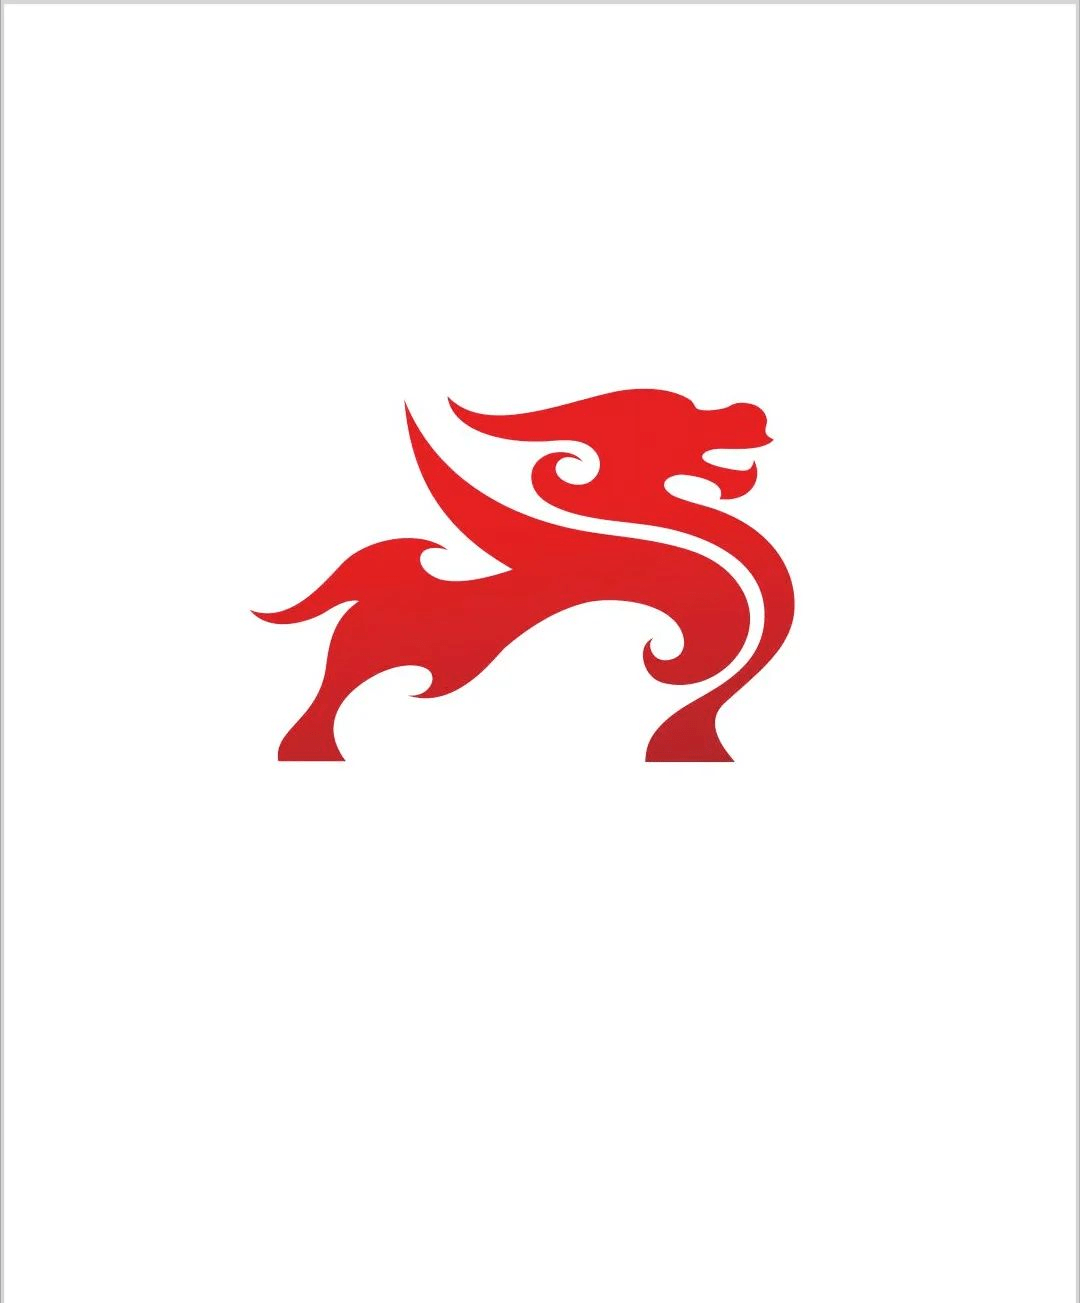 logo设计祥瑞权威的标志设计形式龙纹